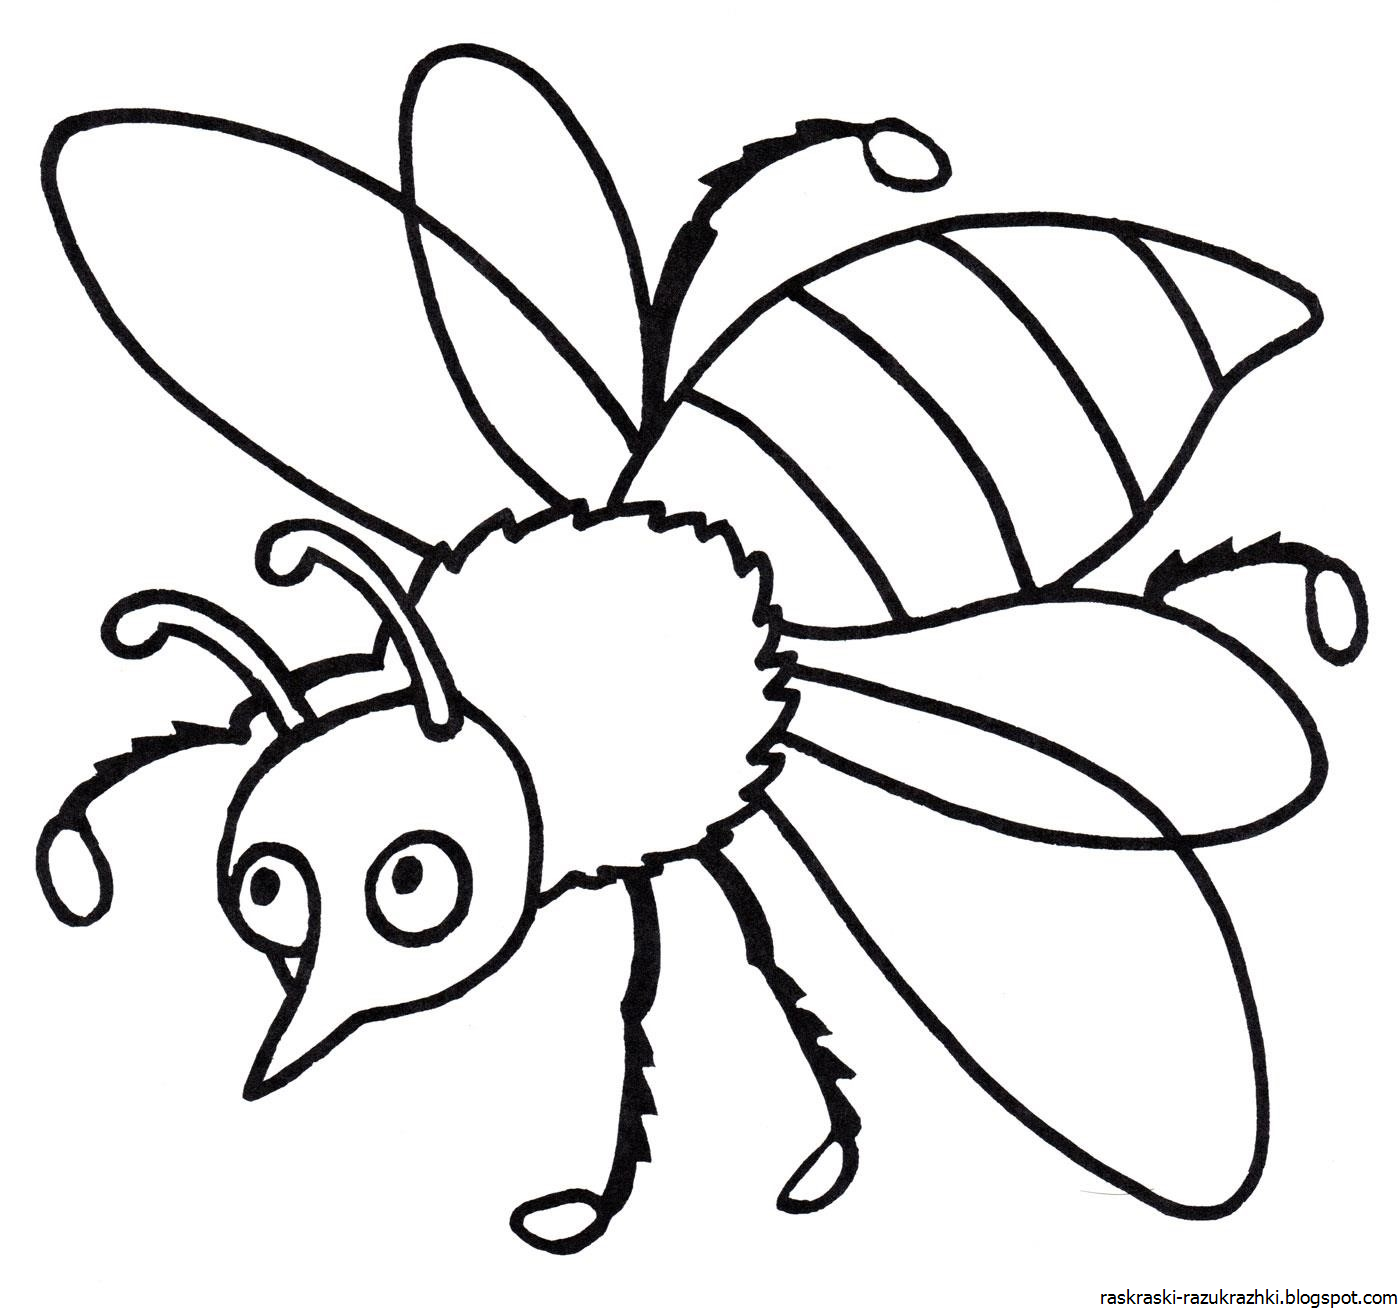 Насекомые раскраска для детей. Раскраски насекомые для детей 5-6 лет. Пчела раскраска. Раскраска насекомые для малышей. Раскраска насекомые для детей 7 лет